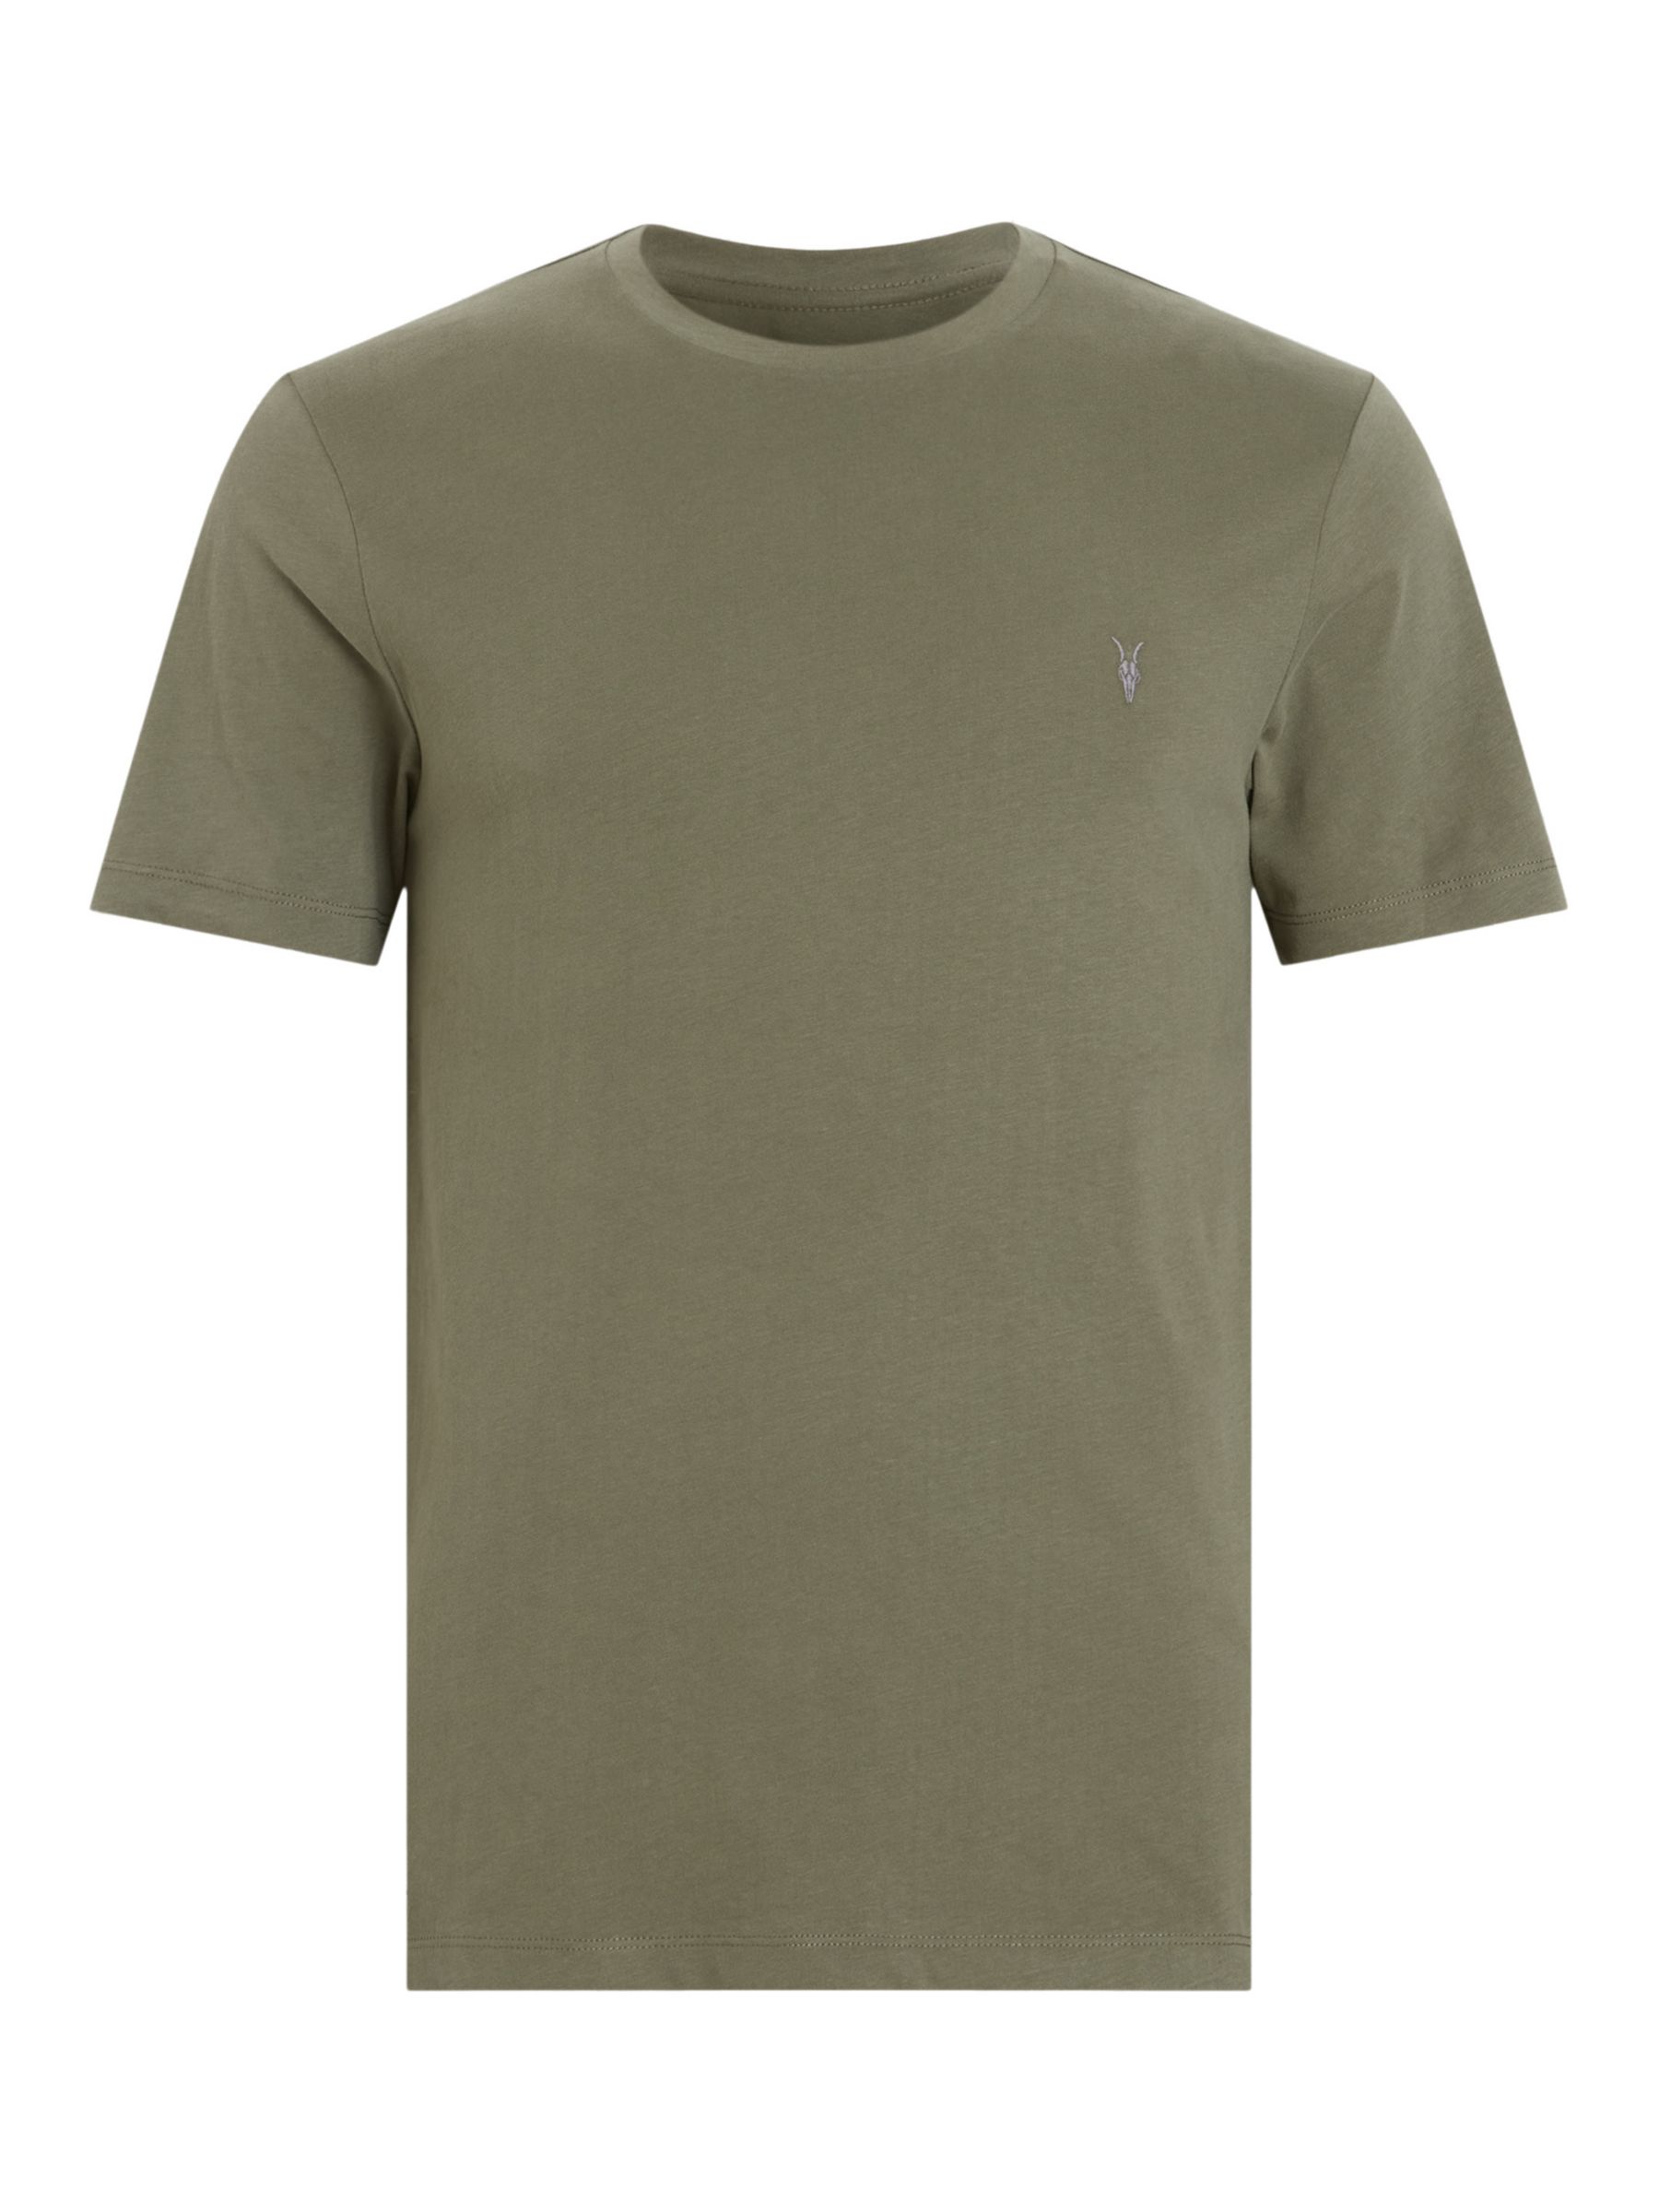 Buy AllSaints Brace Crew T-Shirt Online at johnlewis.com